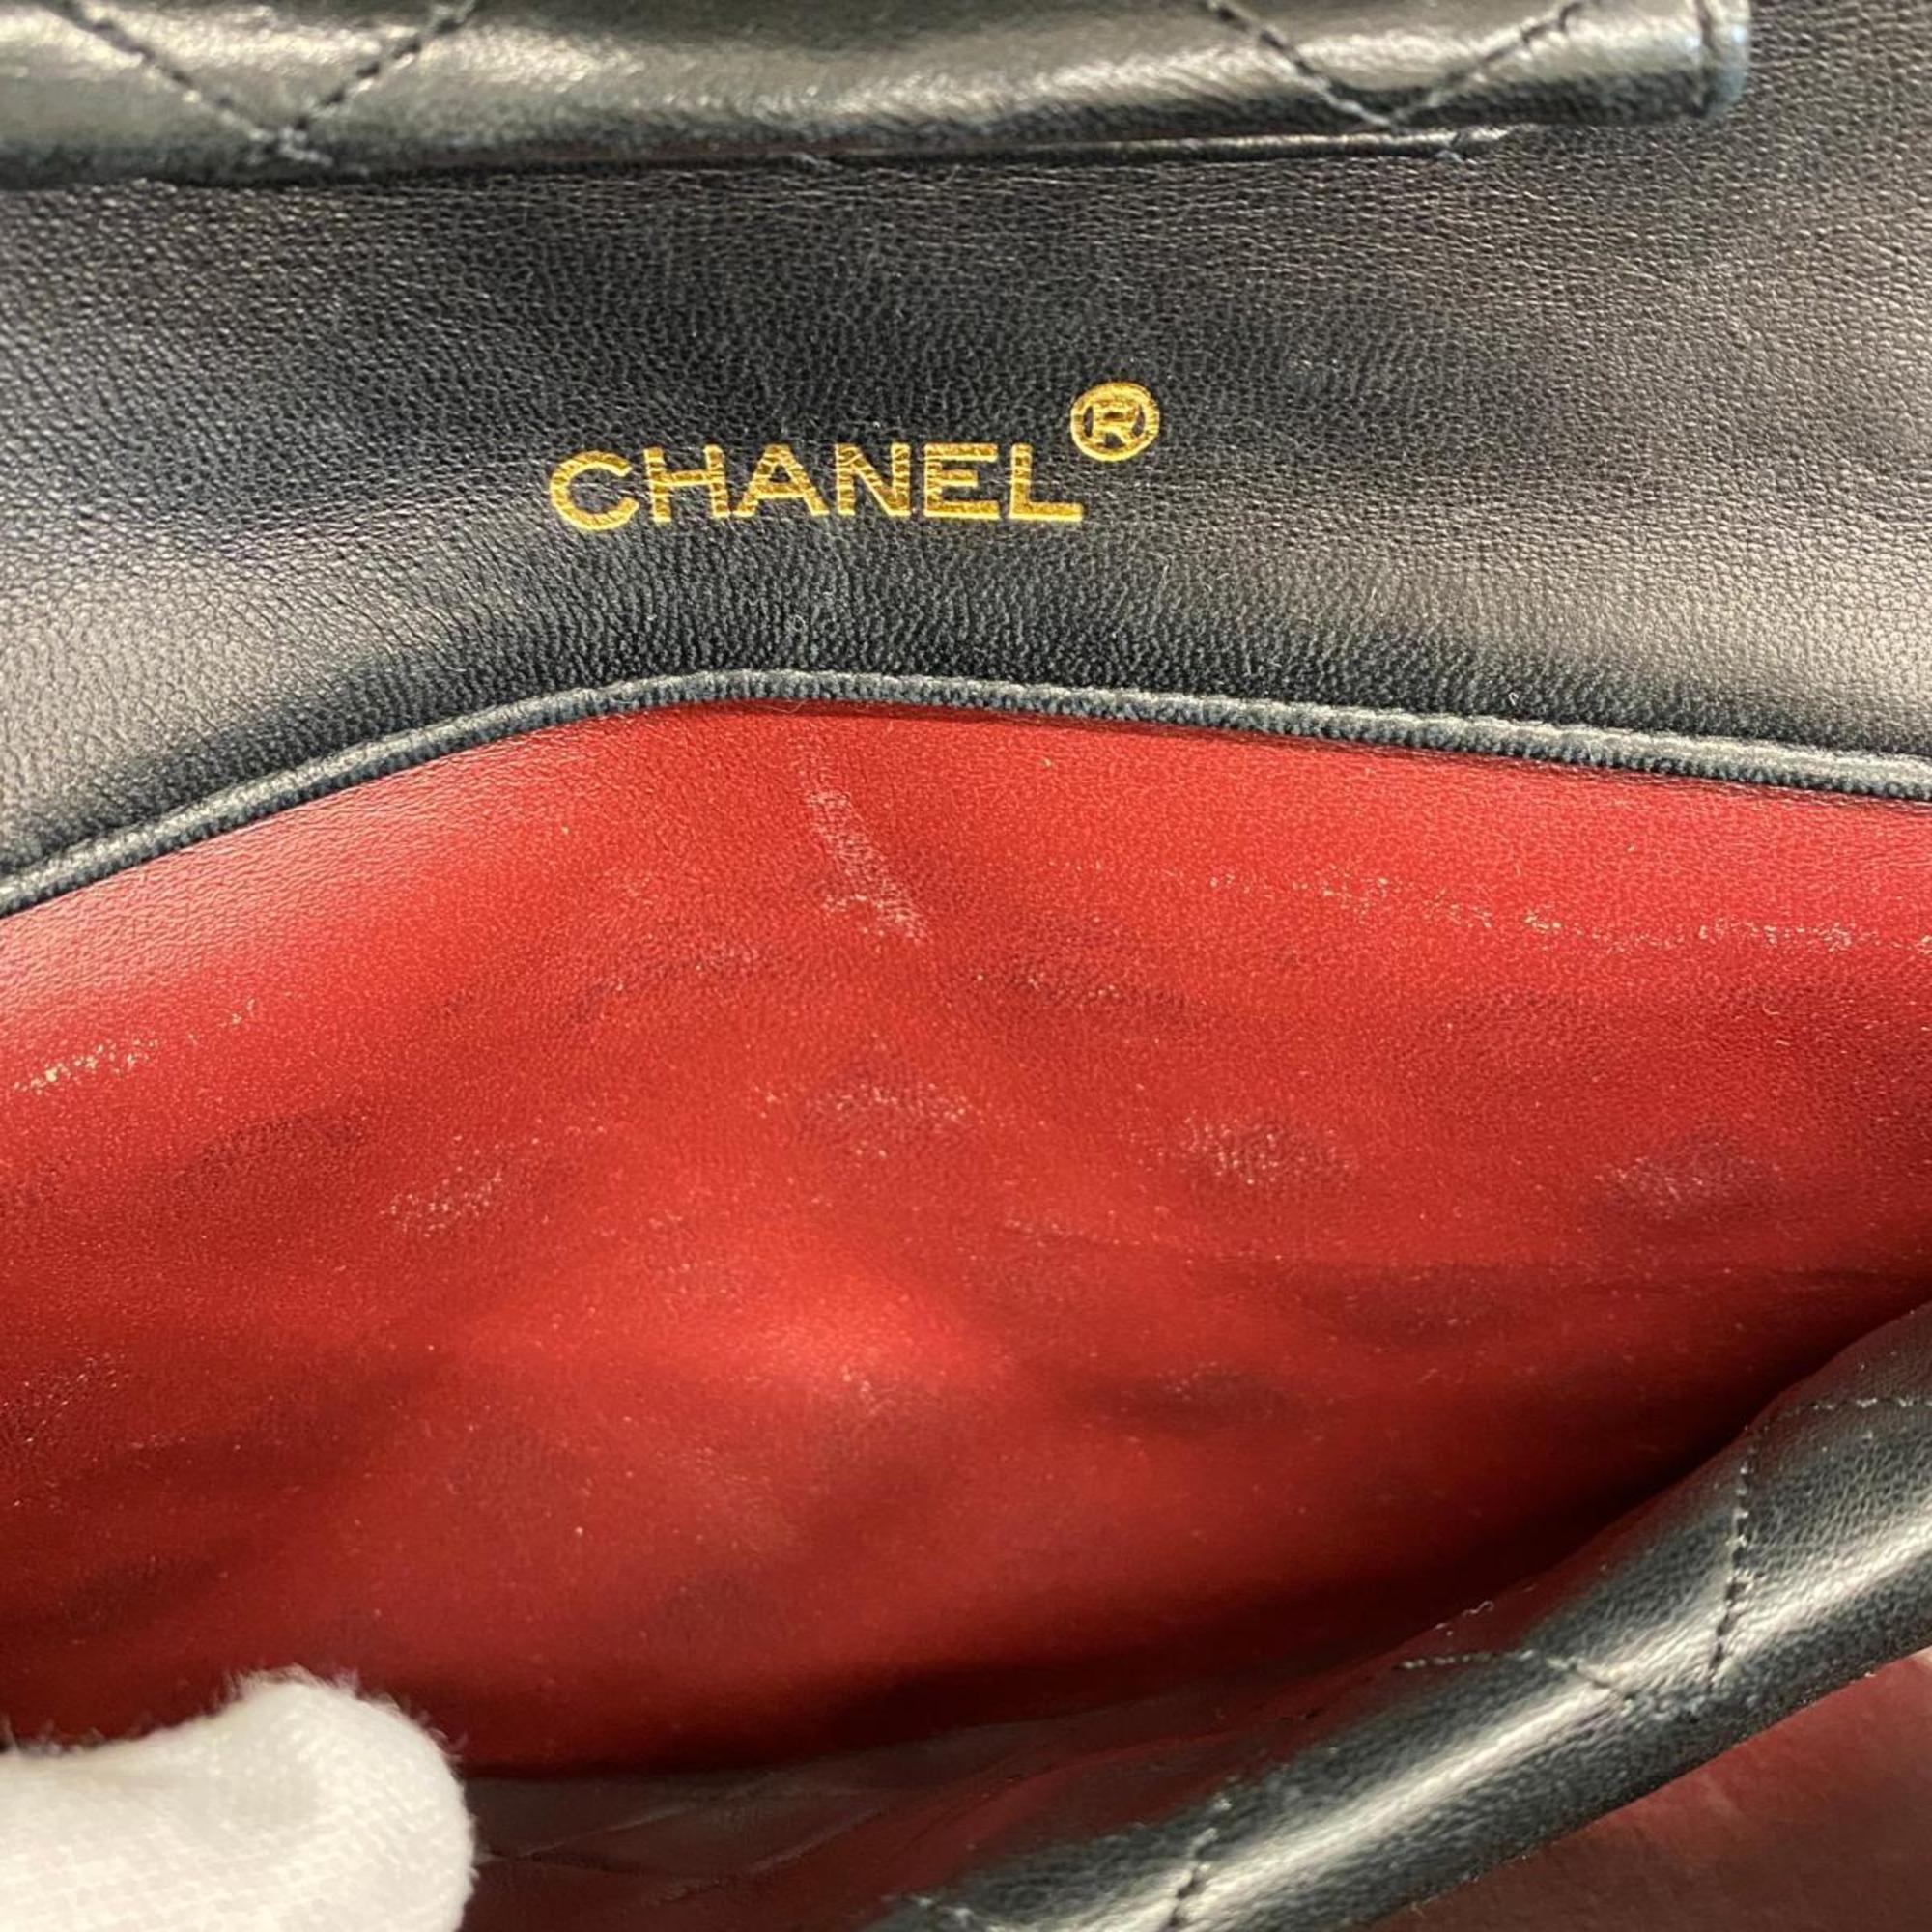 シャネル(Chanel) シャネル ショルダーバッグ マトラッセ Wチェーン ラムスキン ブラック   レディース